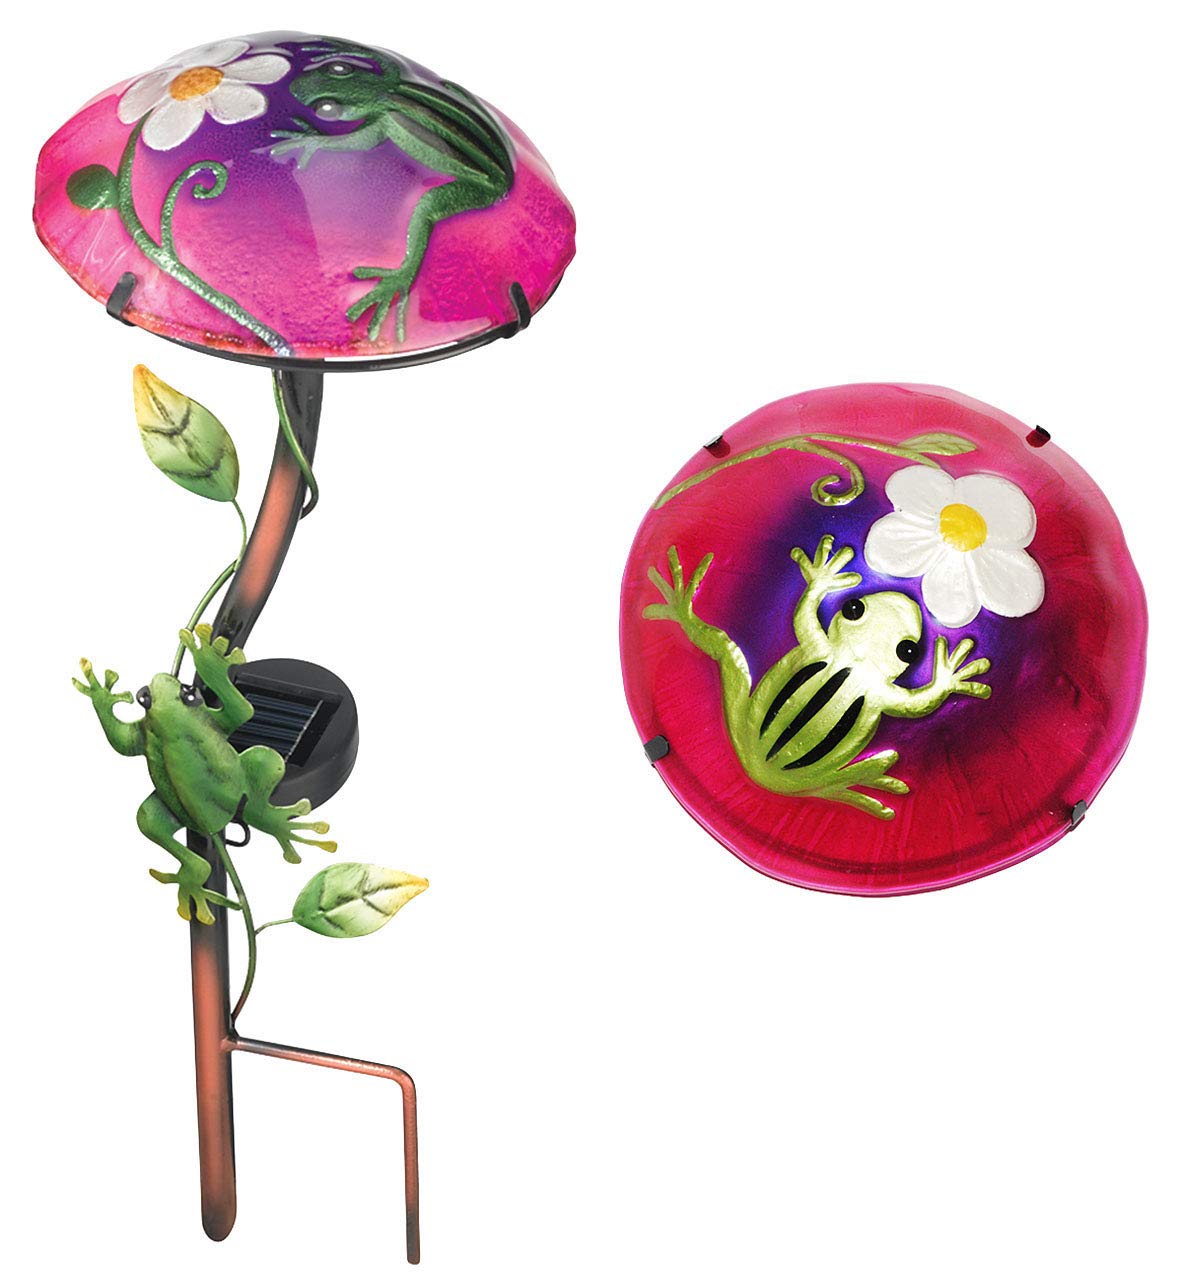 alles-meine.de GmbH Solar Leuchte Pilz Blume mit Frosch - pink/violett - mit LED Licht - handbemaltes Glas - Garten Wetterfest für Außen - Gartendeko Solarleuchte Solarbetr..